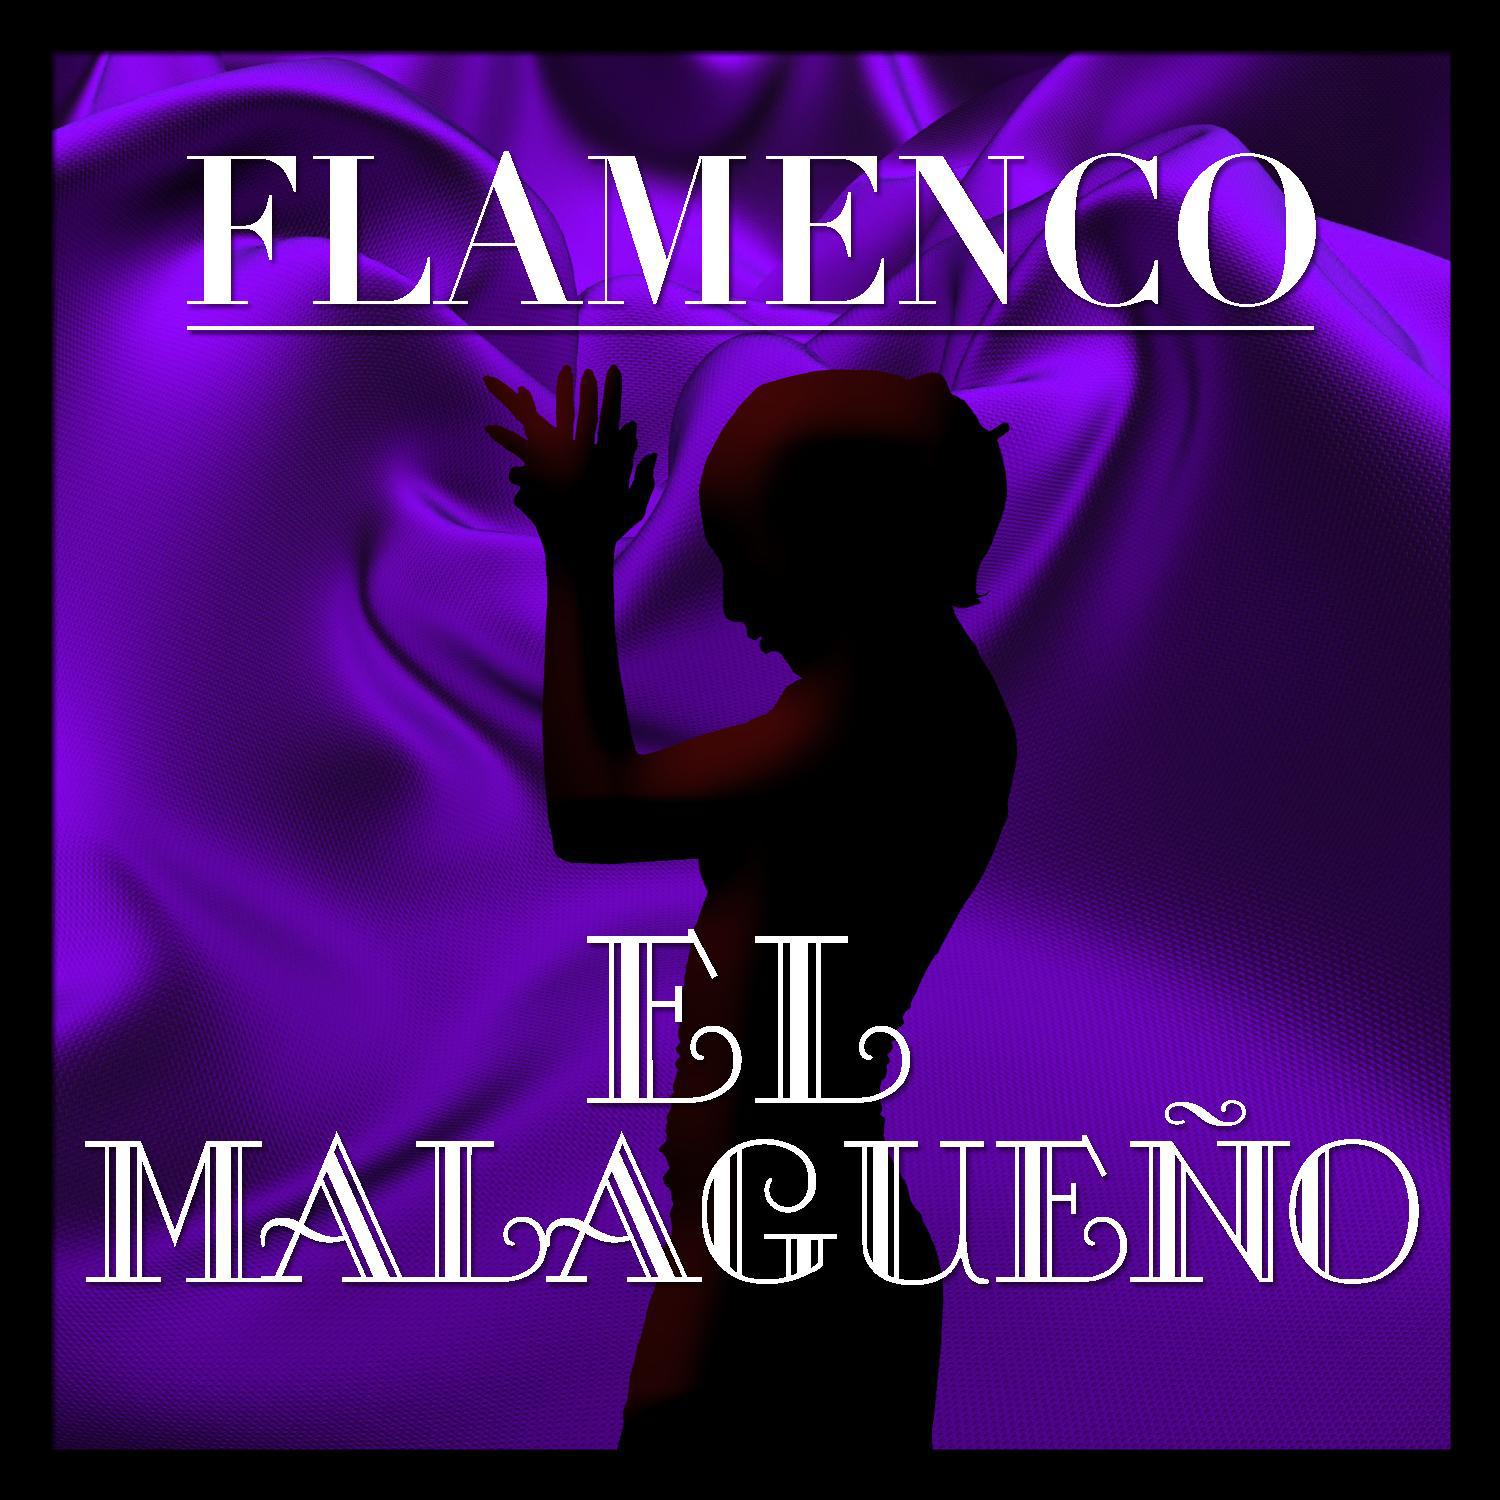 Flamenco: El Malague o